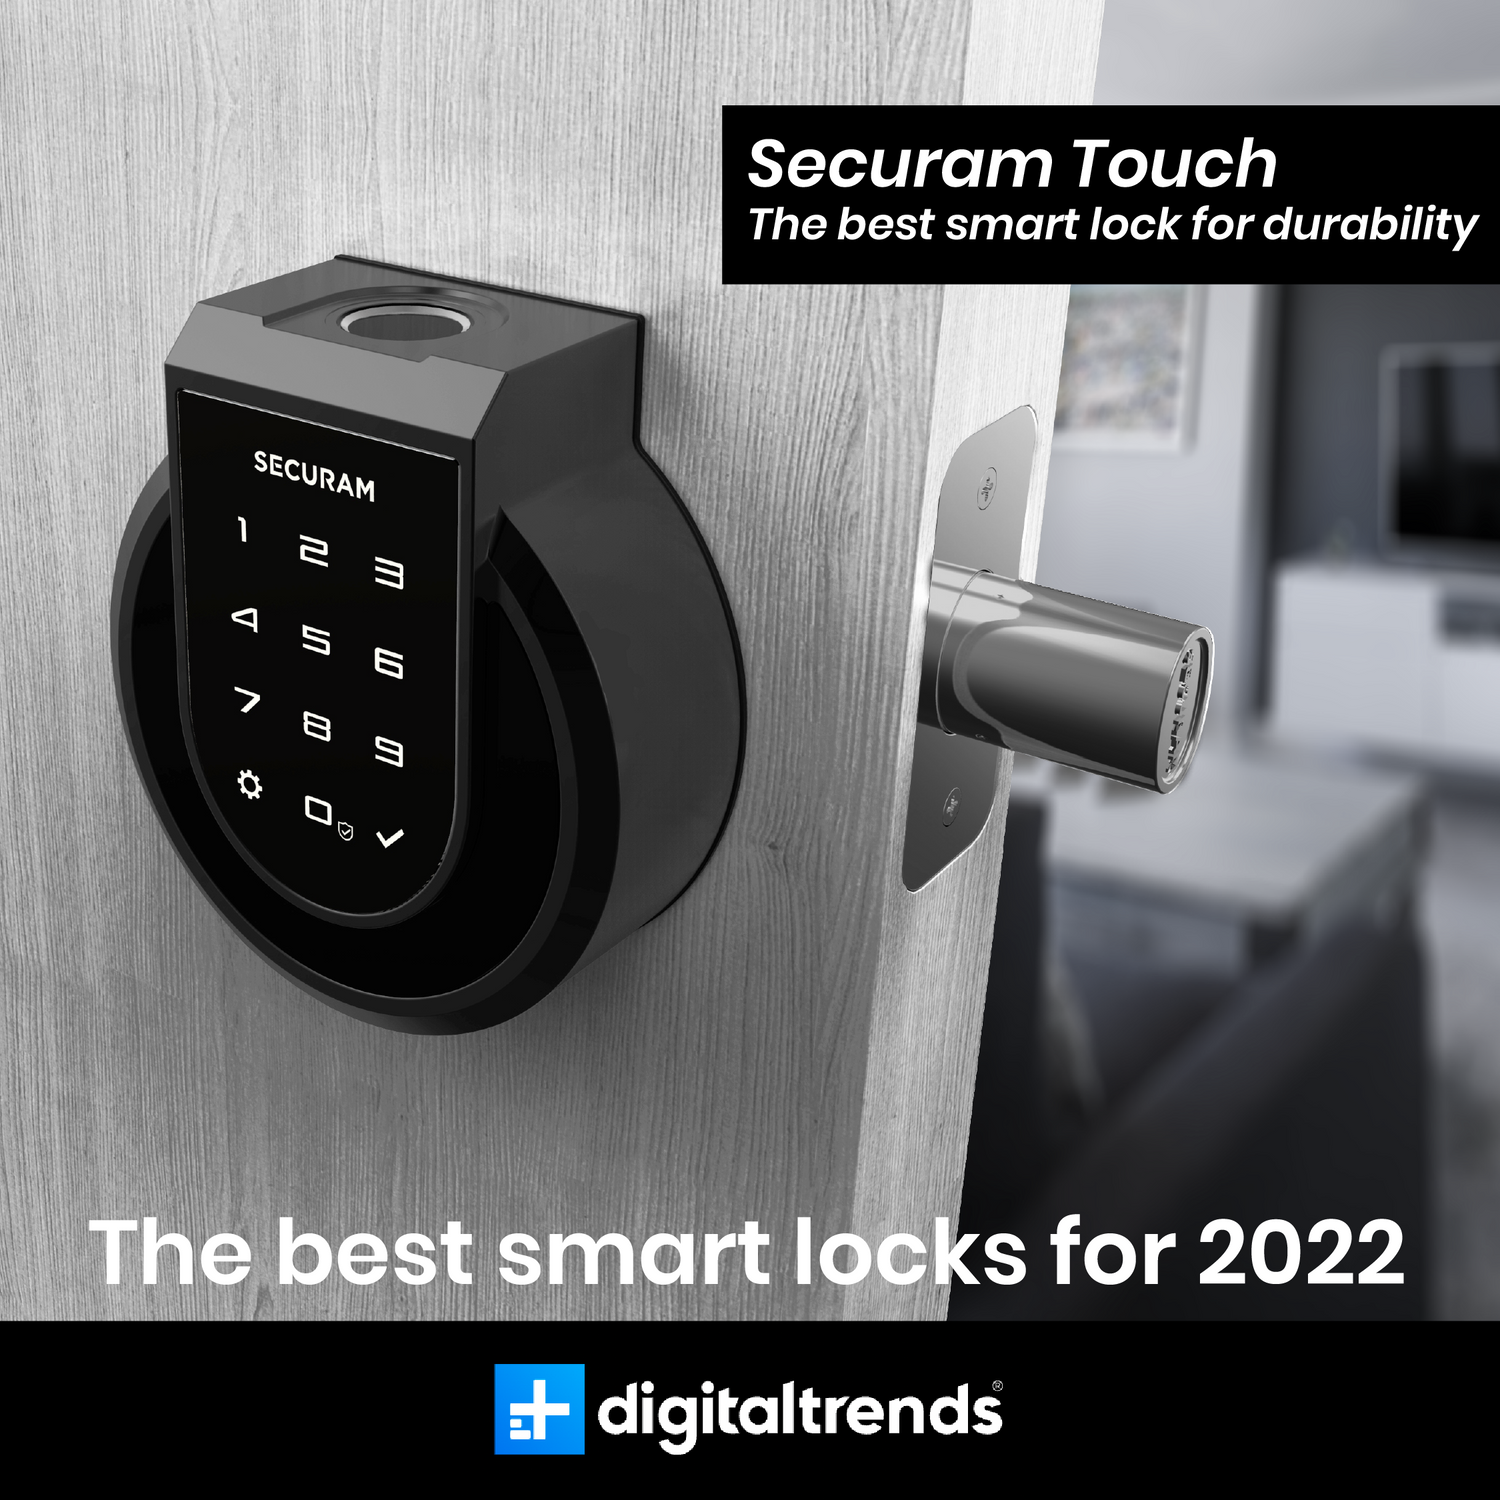 The best smart locks for 2022